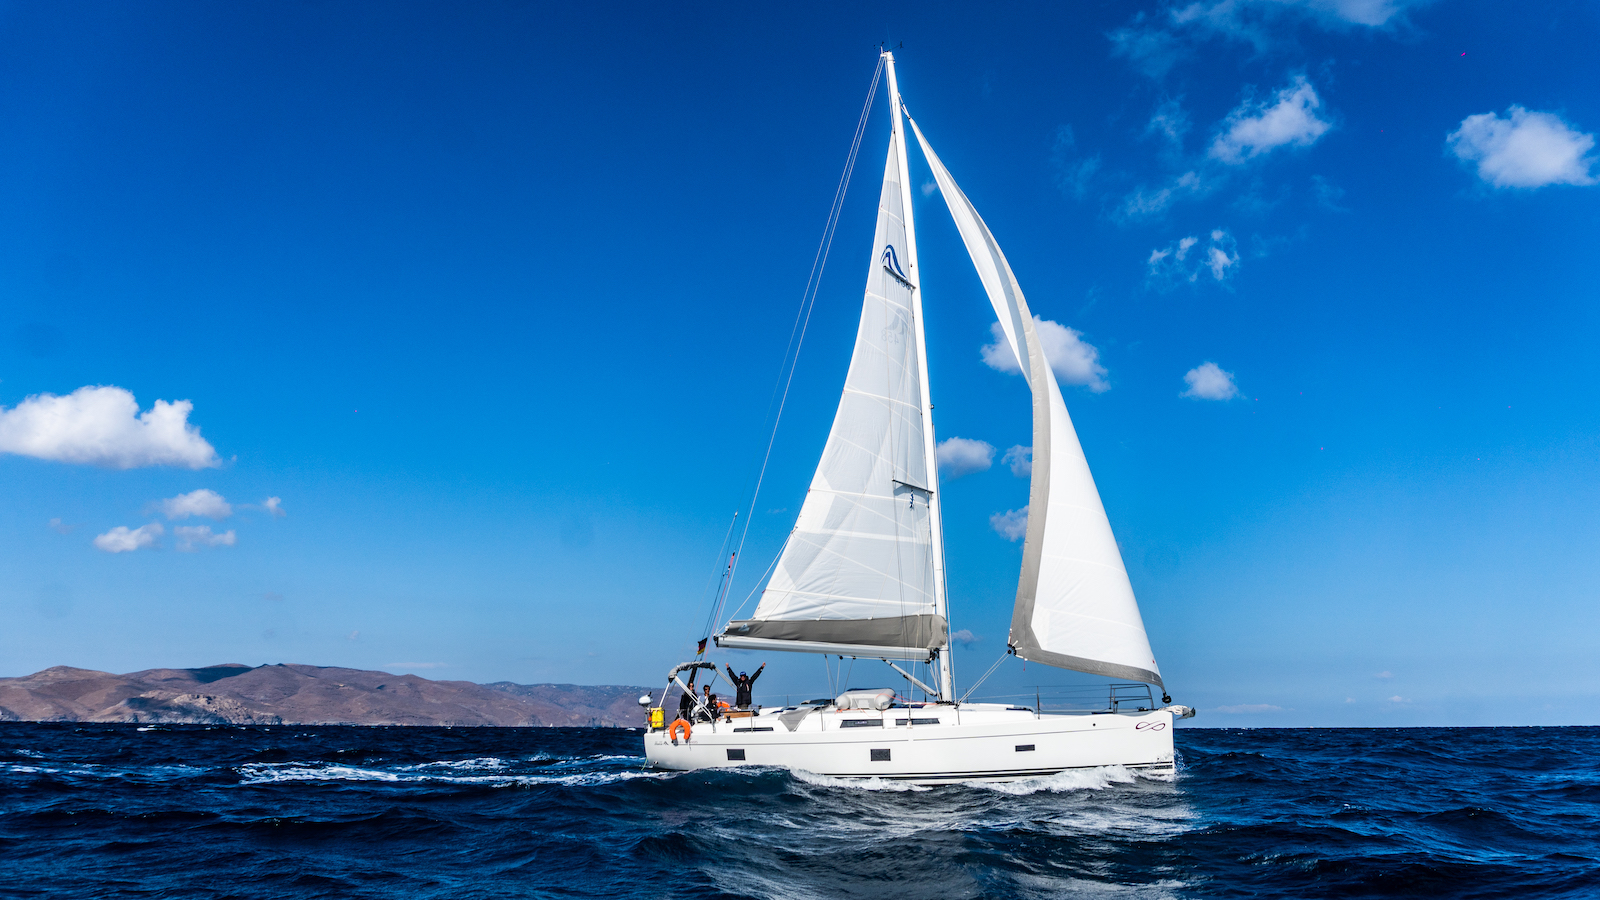 Yachtcharter im Mittelmeer Griechenland Die besten Segelziele